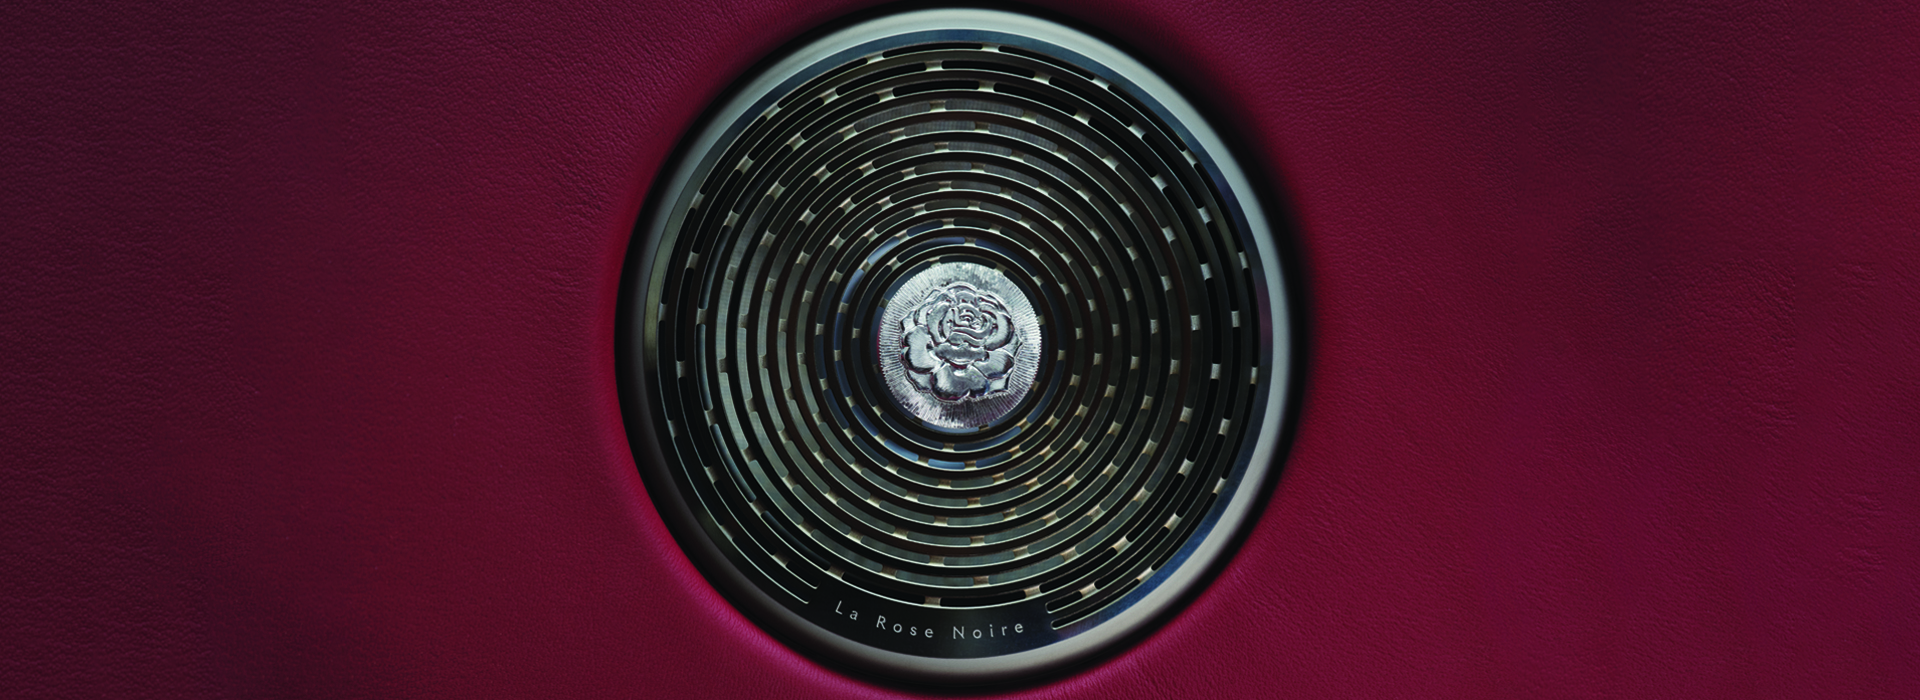 Rolls-Royce unveils la rose noire: the first droptail coachbuild commission